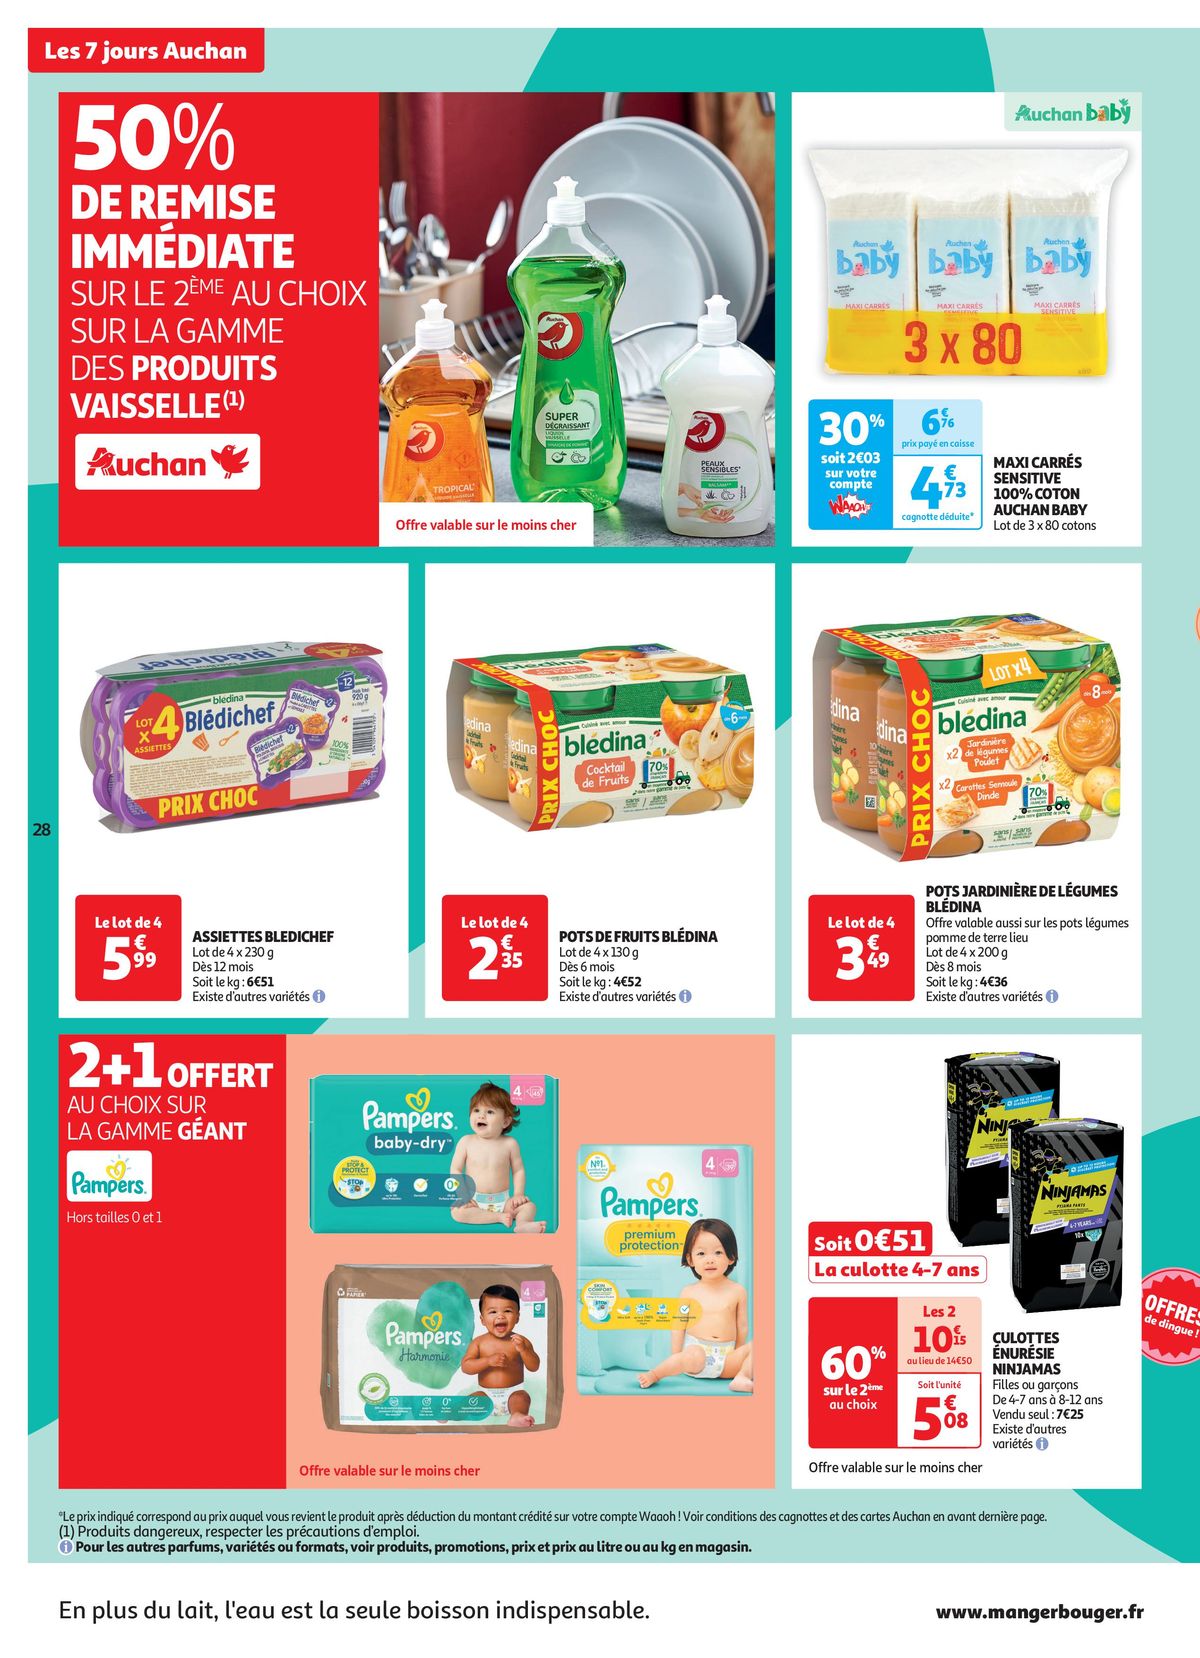 Catalogue C'est les 7 jours Auchan dans votre super !, page 00028